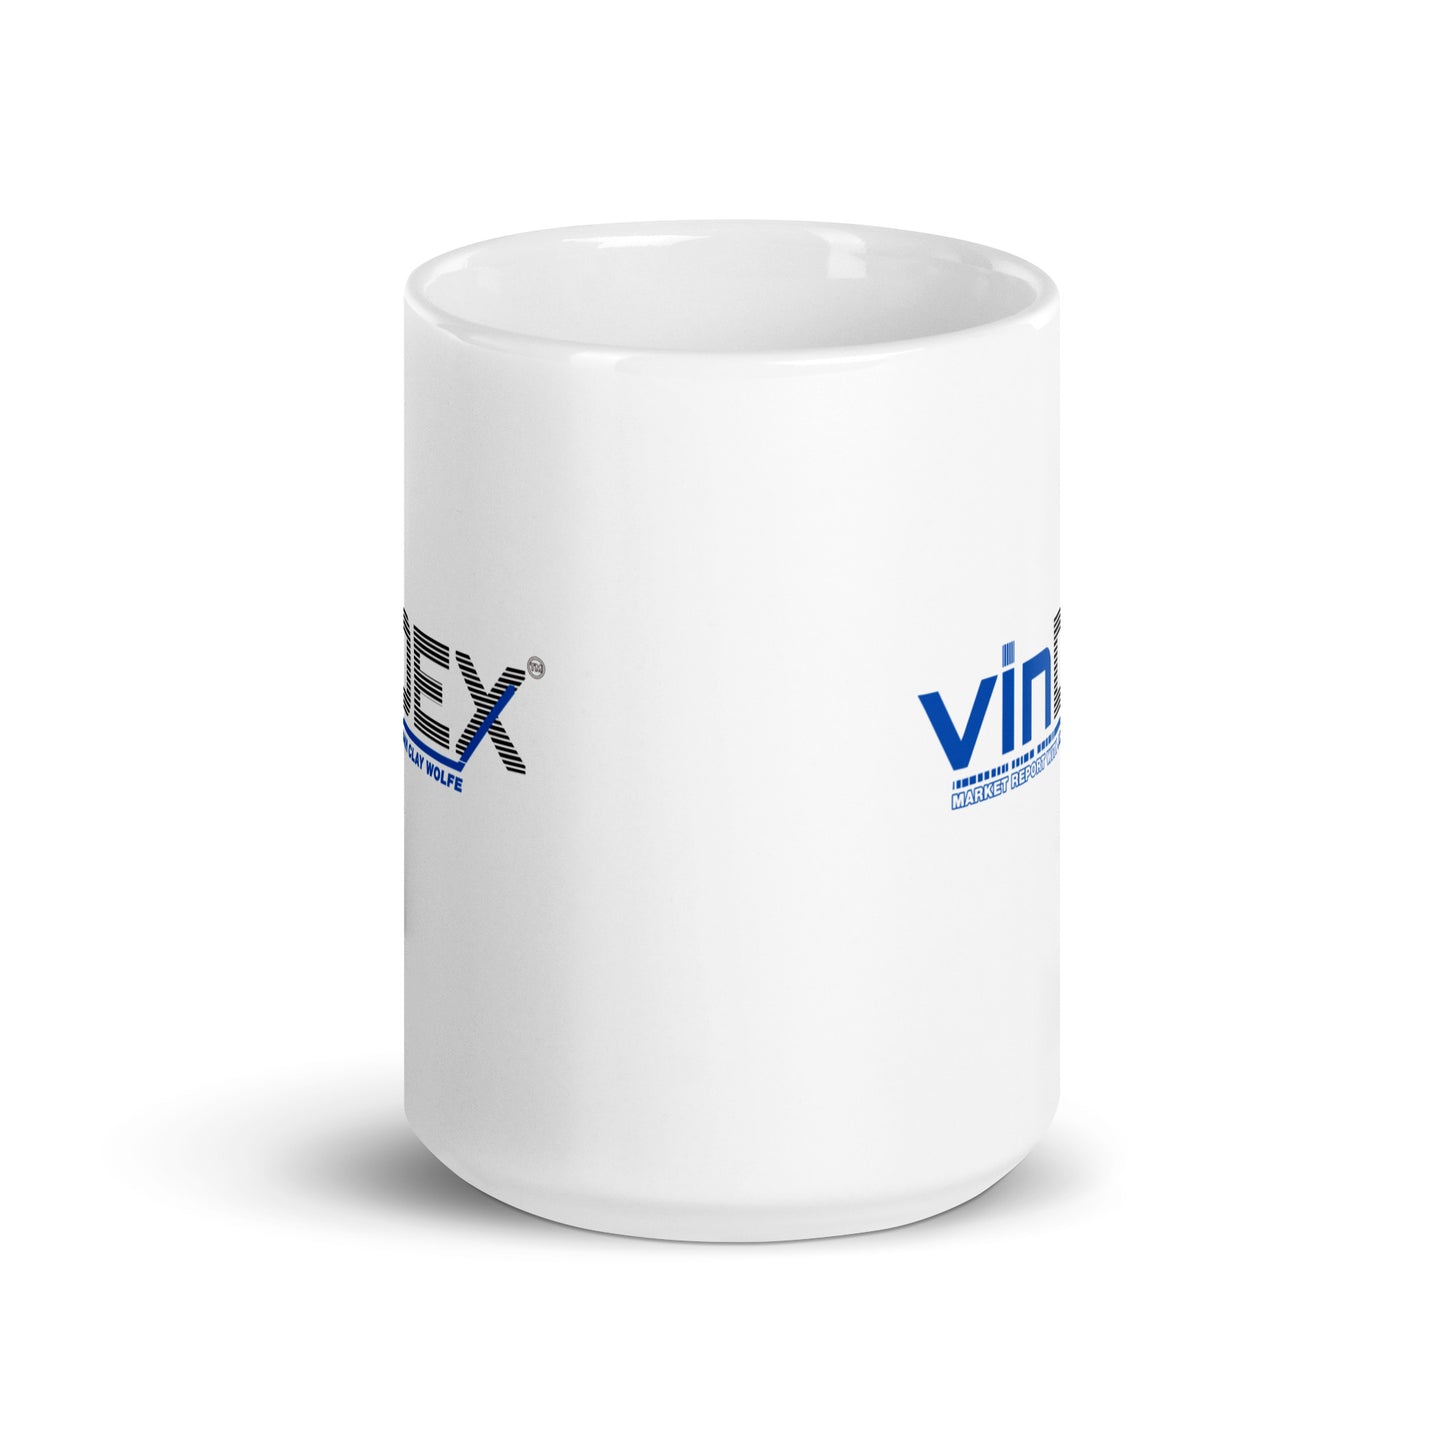 VinDex White glossy mug